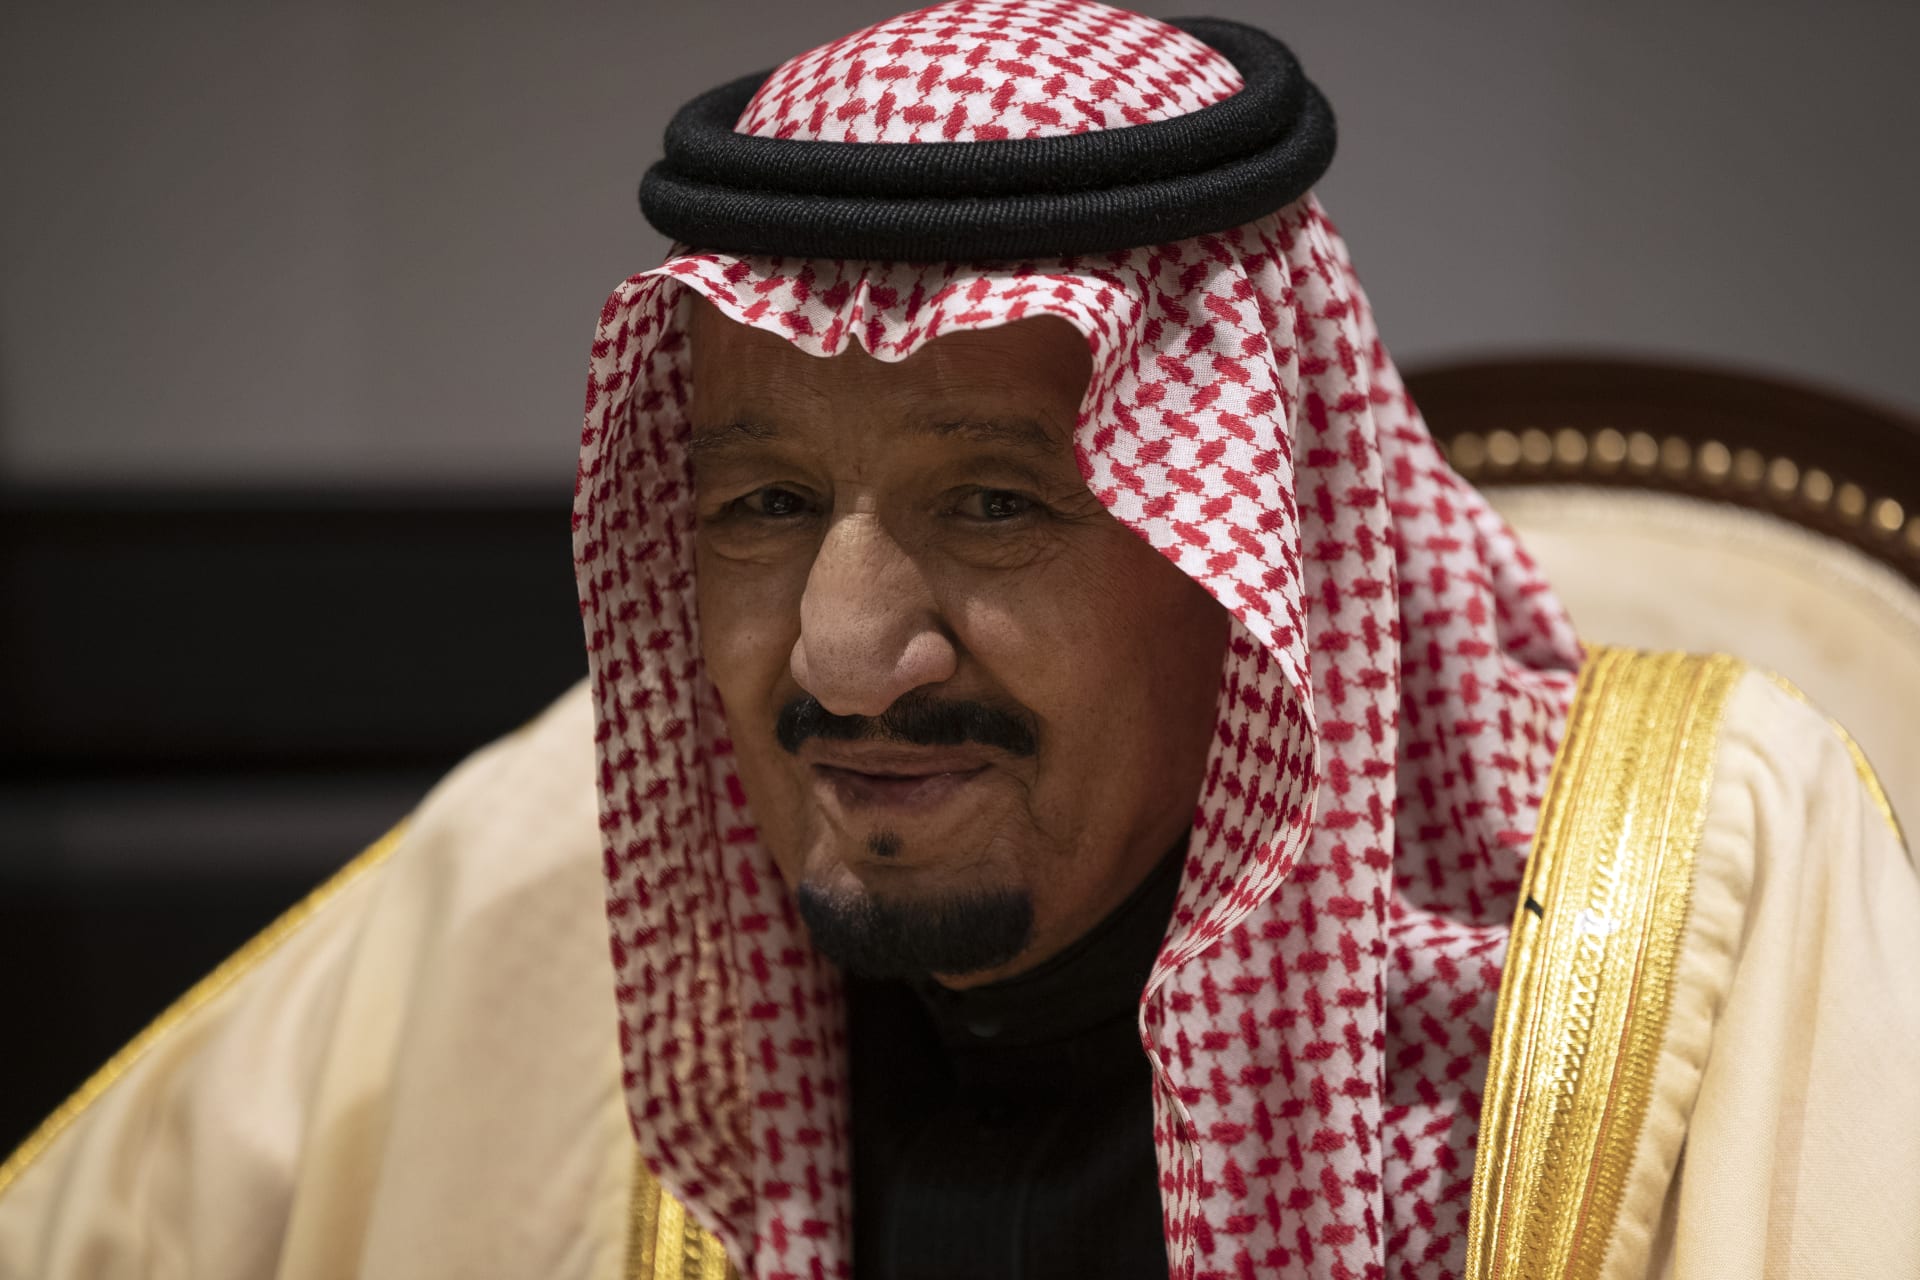 الديوان الملكي السعودي يصدر بيانا عن الحالة الصحية للملك سلمان